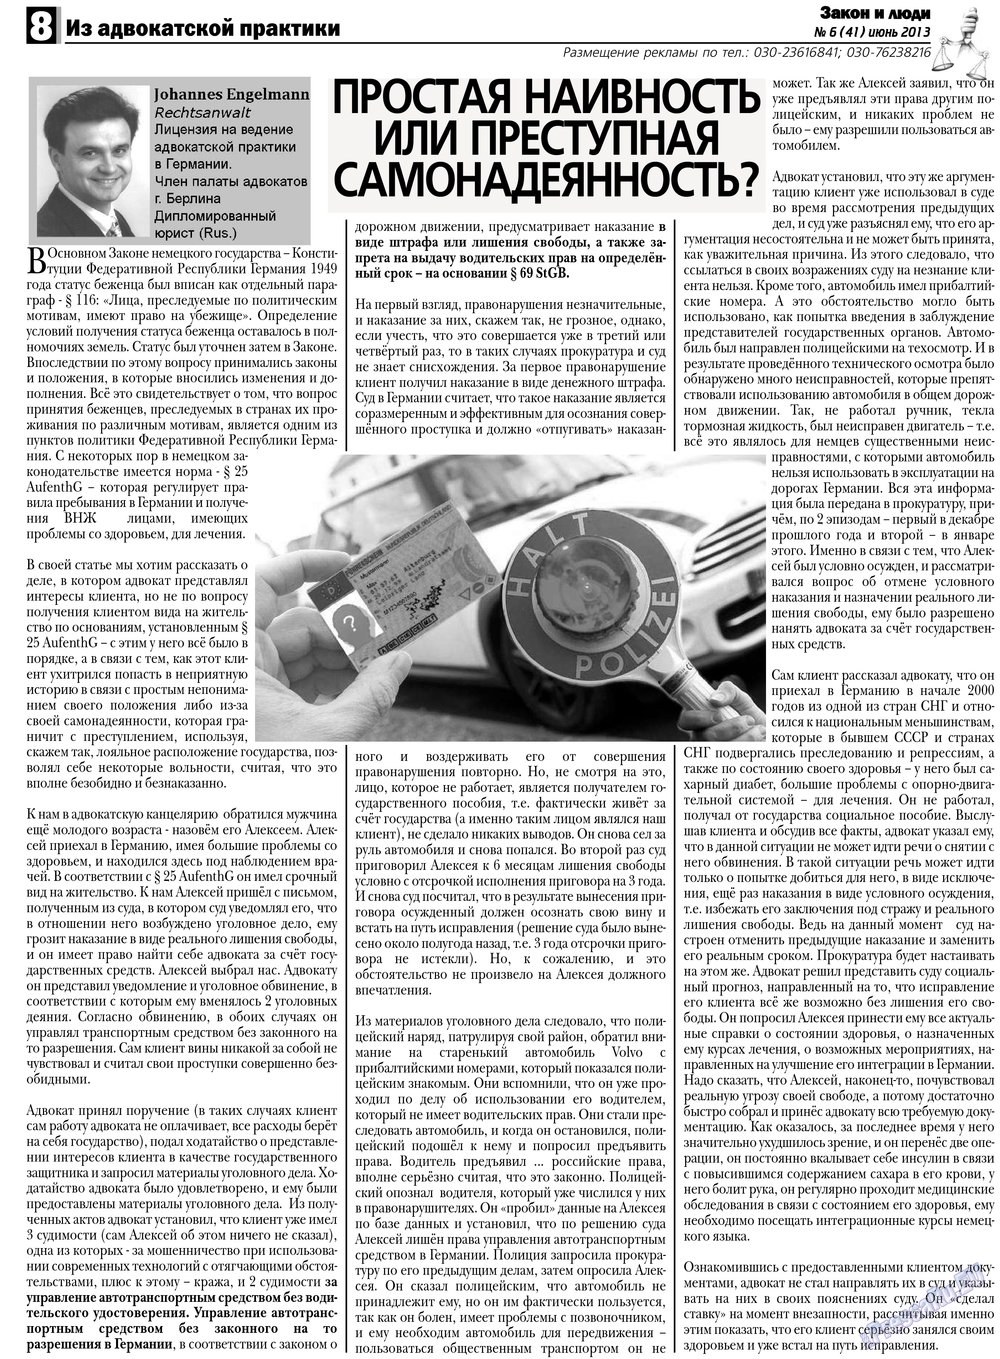 Закон и люди, газета. 2013 №6 стр.8